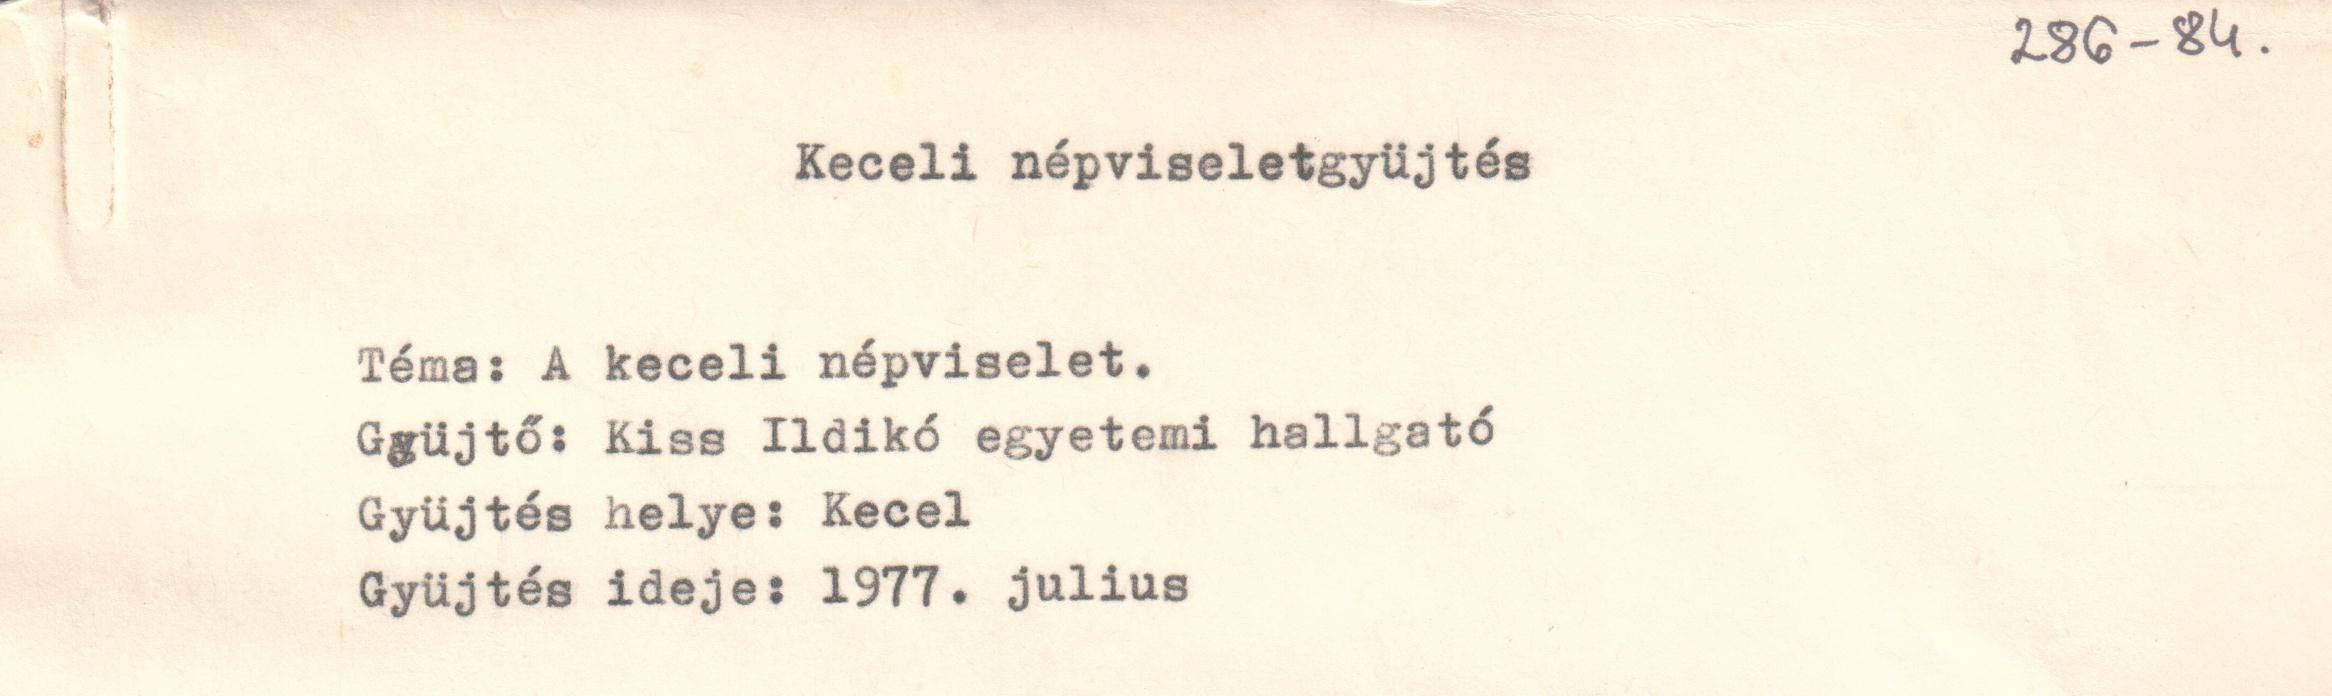 Jegyzetelt néprajzi gyűjtés Téglás Istvánnéval a népviselet témakörében. Gépirat. (Viski Károly Múzeum Kalocsa RR-F)